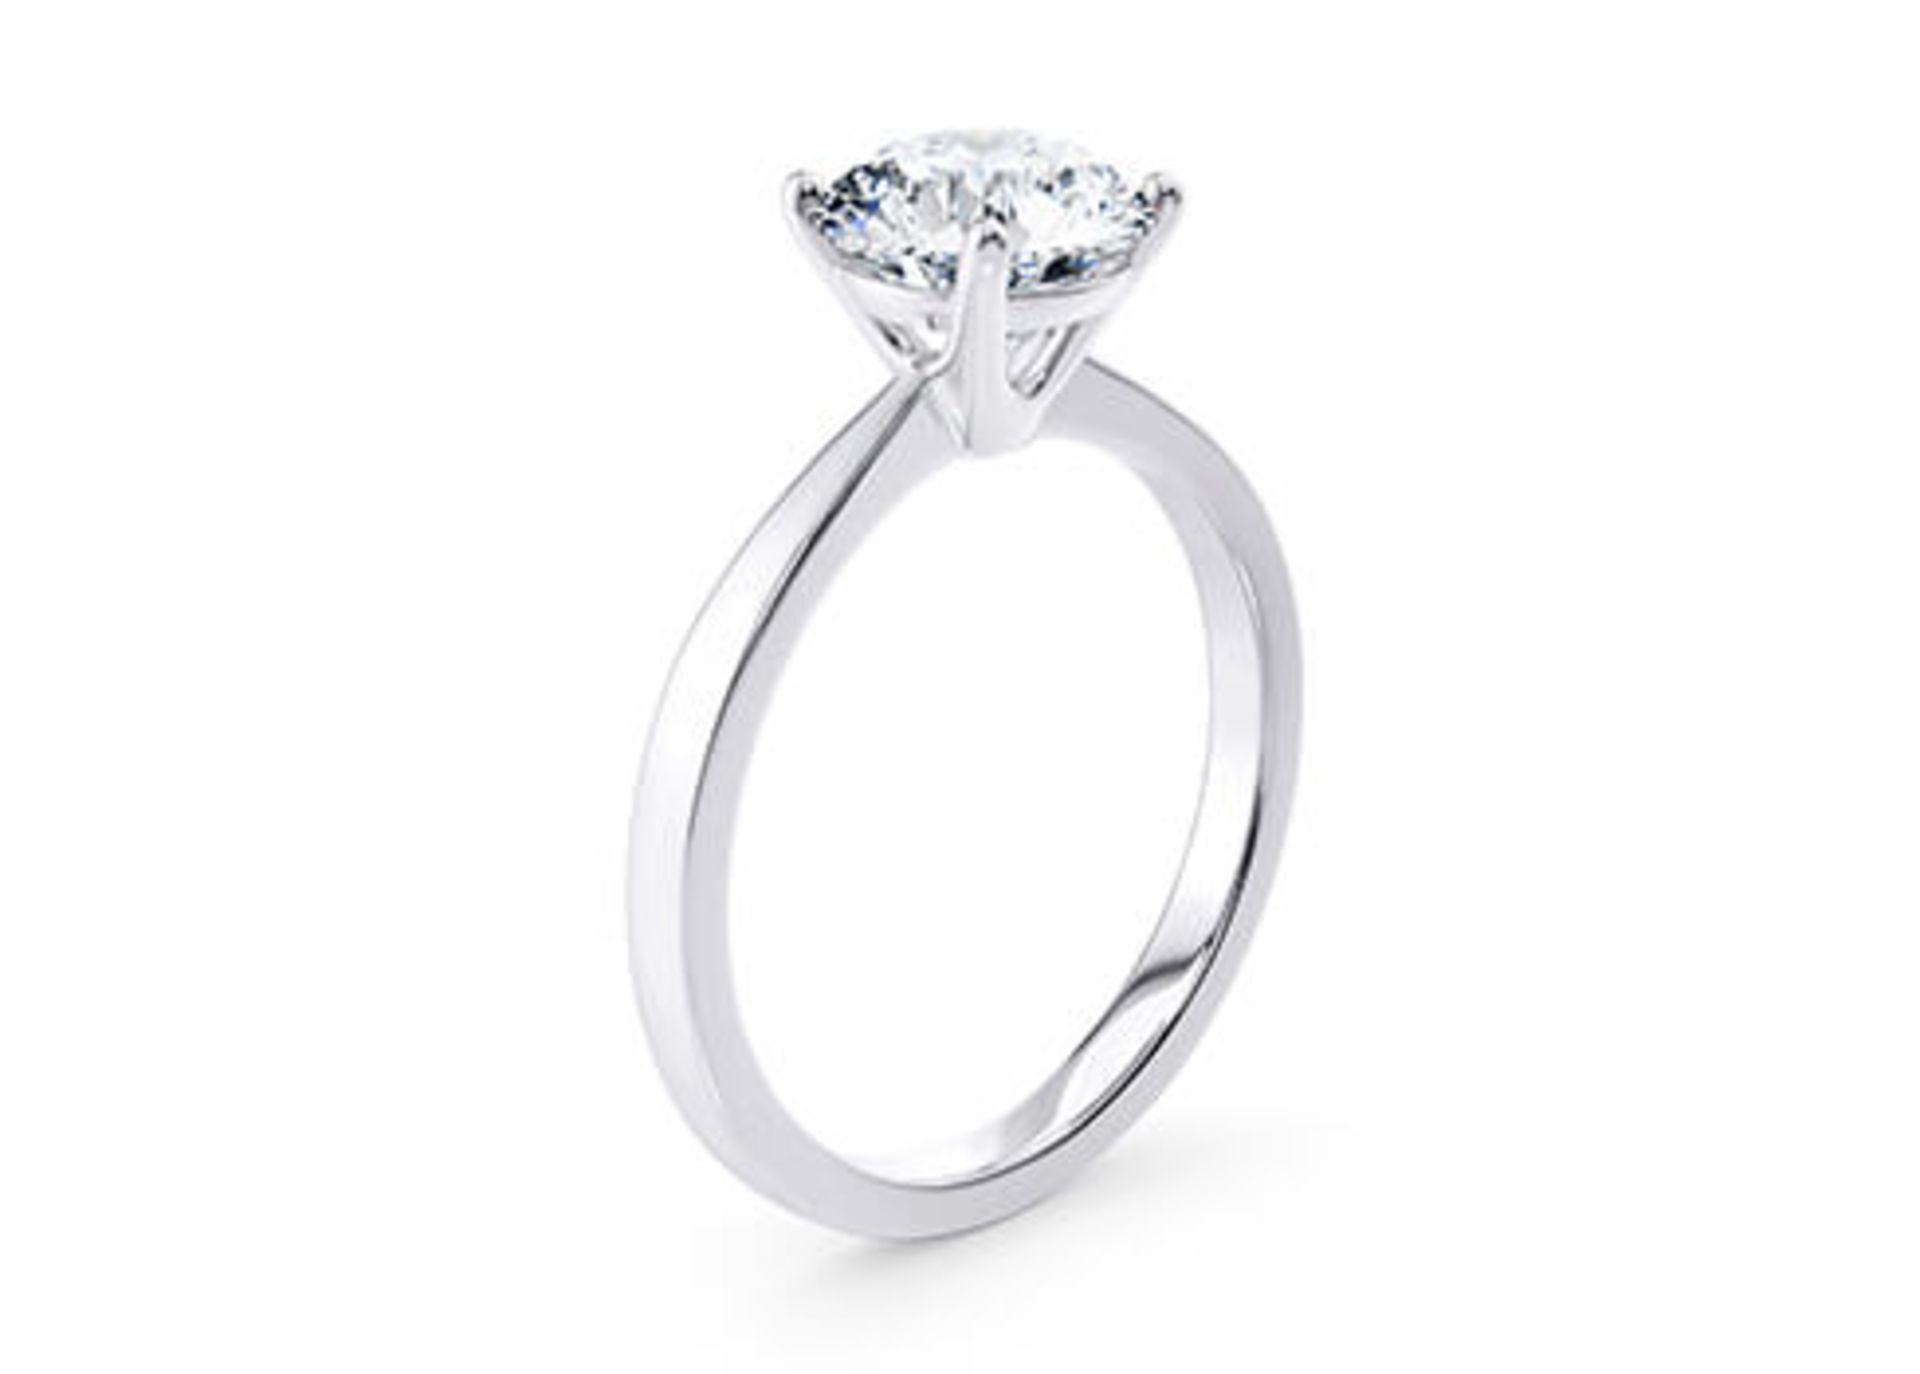 Round Brilliant Cut Diamond Platinum Ring 2.00 Carat D Colour VS1 Clarity IDEAL EX EX - IGI - Image 2 of 3